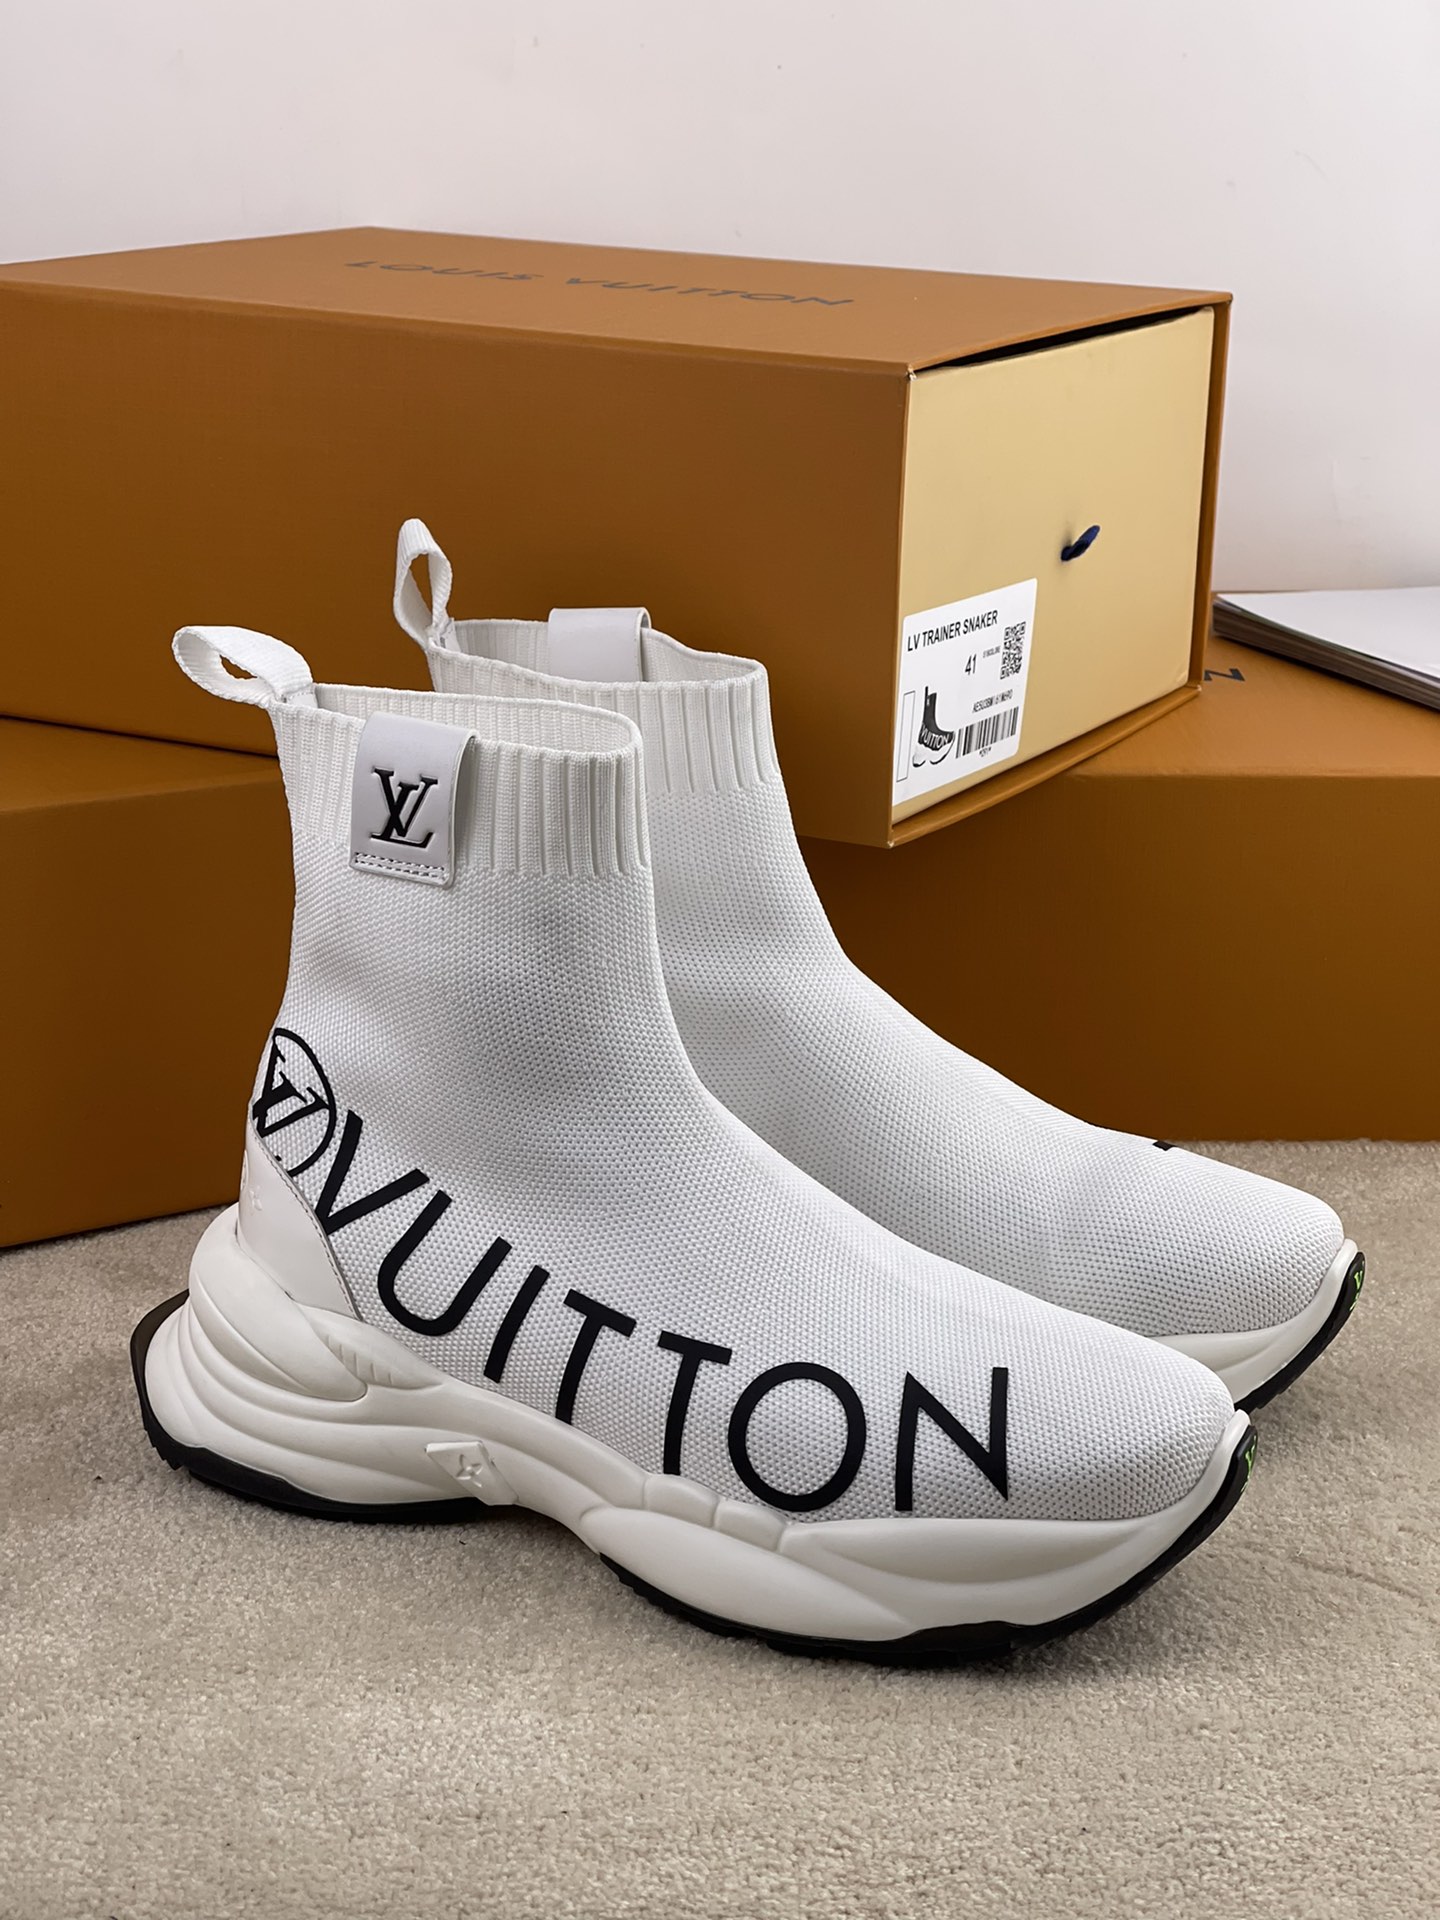 Louis Vuitton Run 55 Sneaker Boot For Men # 263019, cheap Louis Vuitton Boots, only $89!